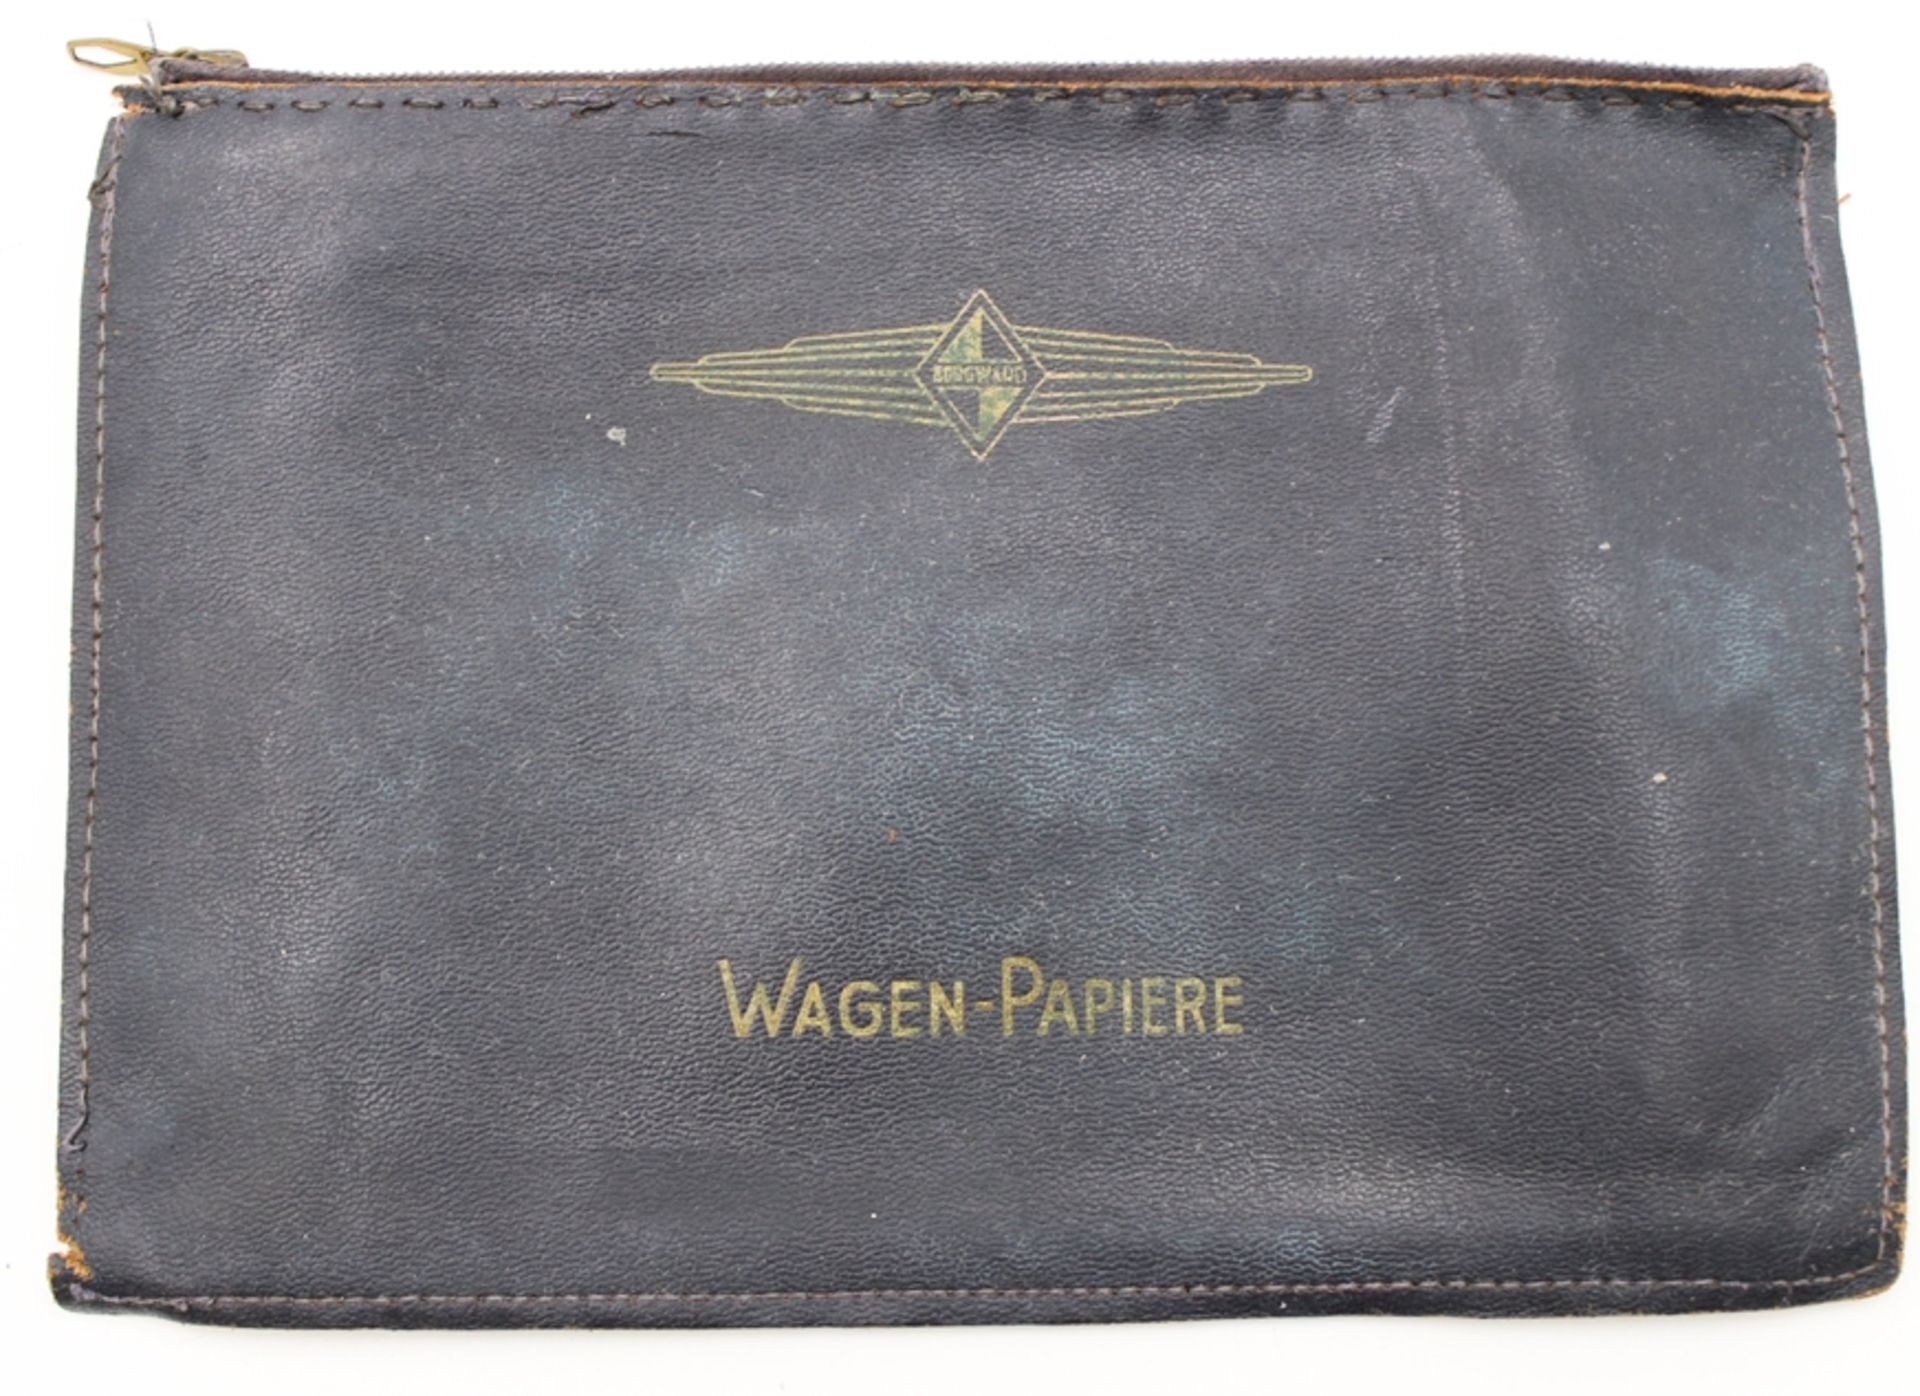 Borgward-Wagenpapiere Mappe, älter, Leder, Gebrauchsspuren, 17 x 24,5cm.